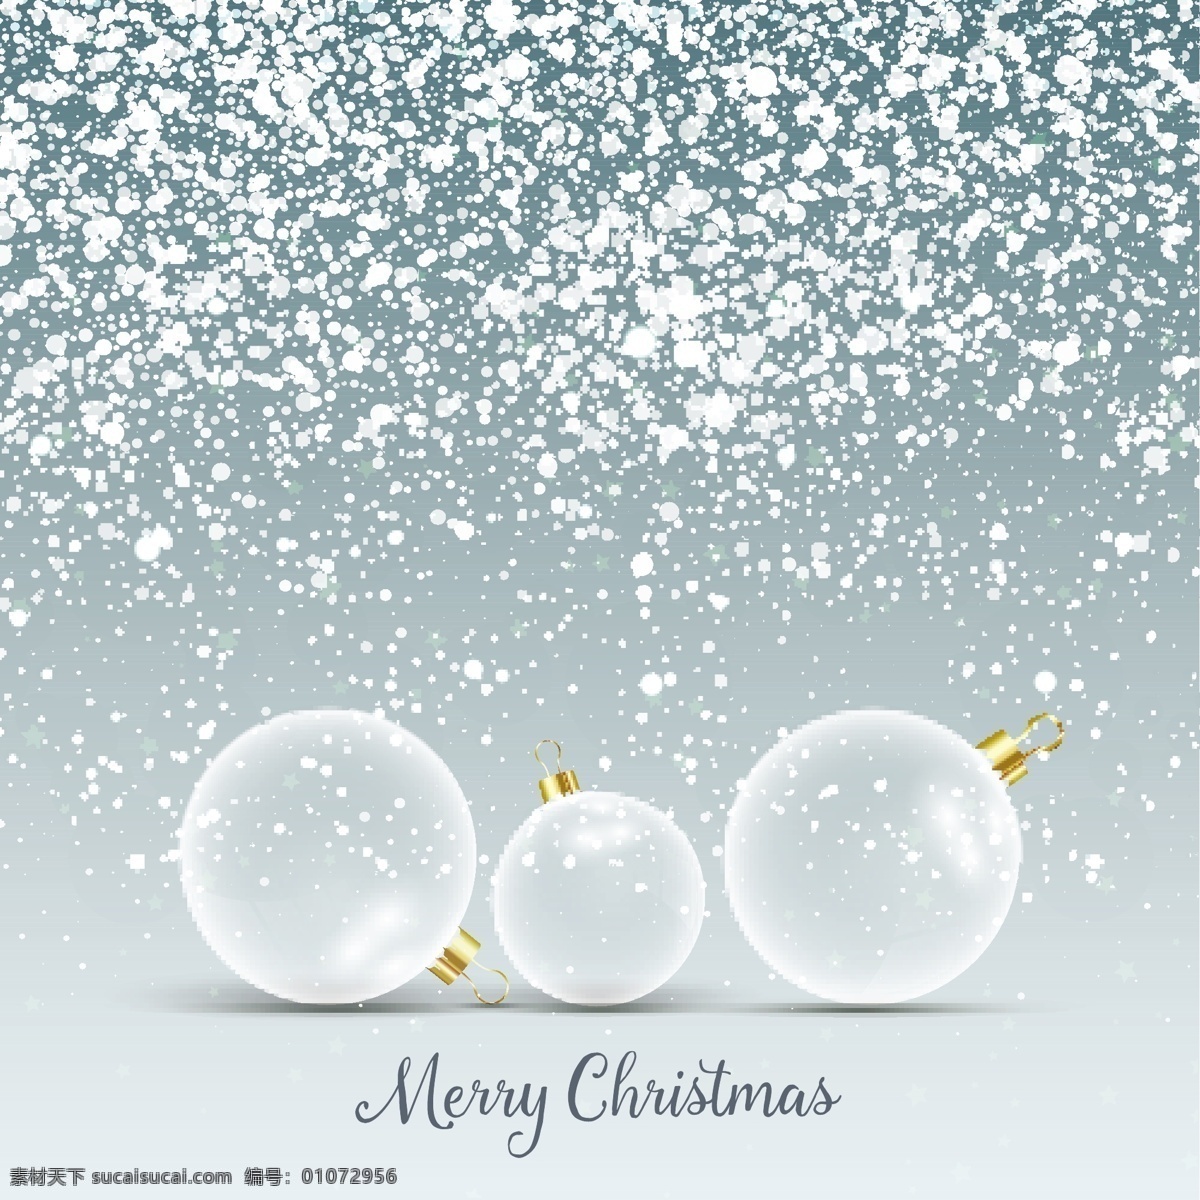 玻璃 挂件 雪 圣诞 背景 圣诞节 下雪了 圣诞快乐 冬天 装饰 球 文化 冷 假期 明亮 玩具 季节 节日 有光泽